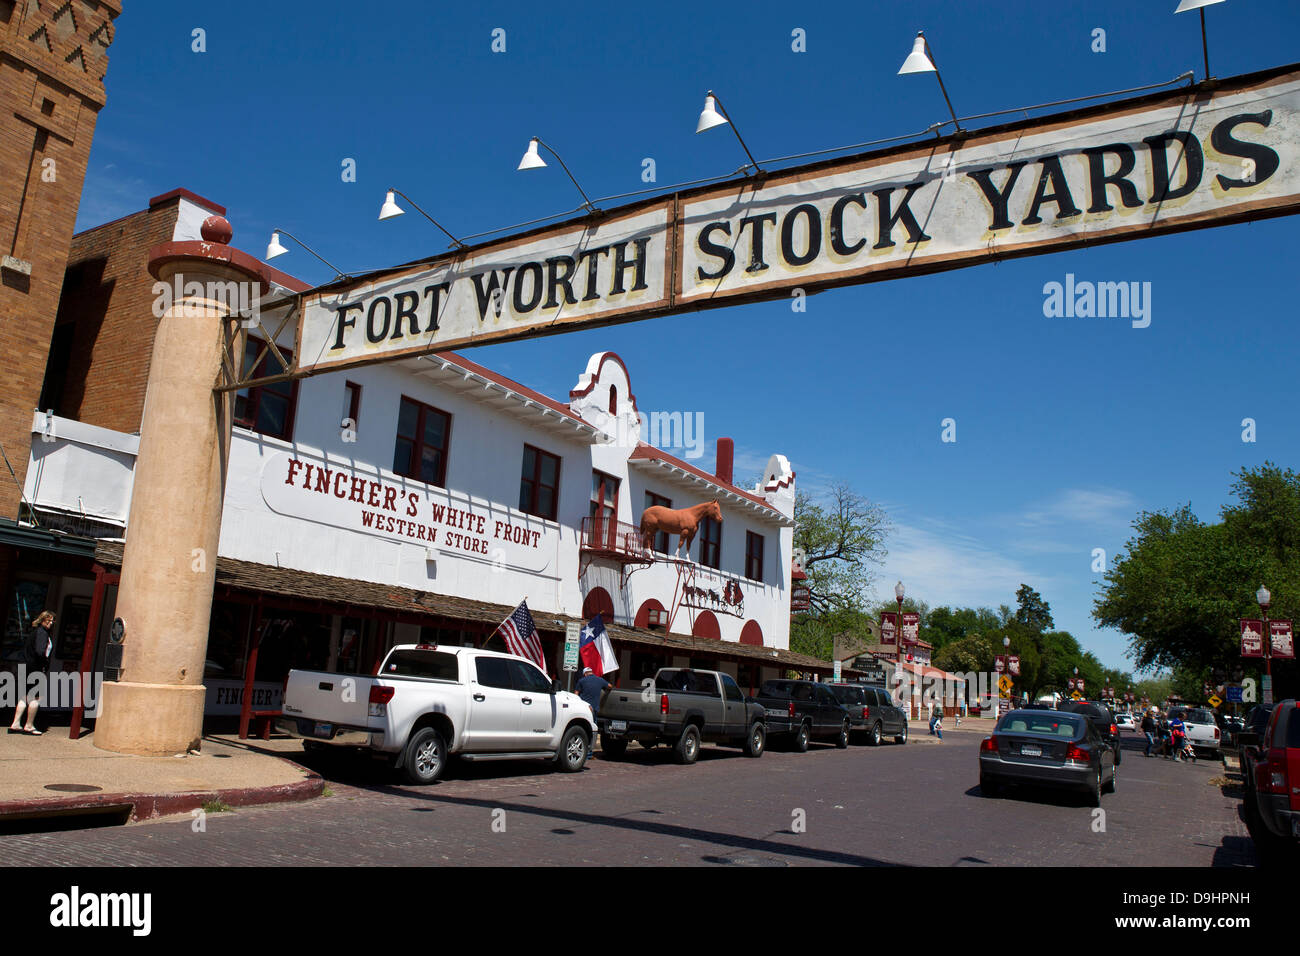 Entrada a Fort Worth Stock Yards en Exchange St, Ft. Worth, Texas, Estados Unidos de América Foto de stock